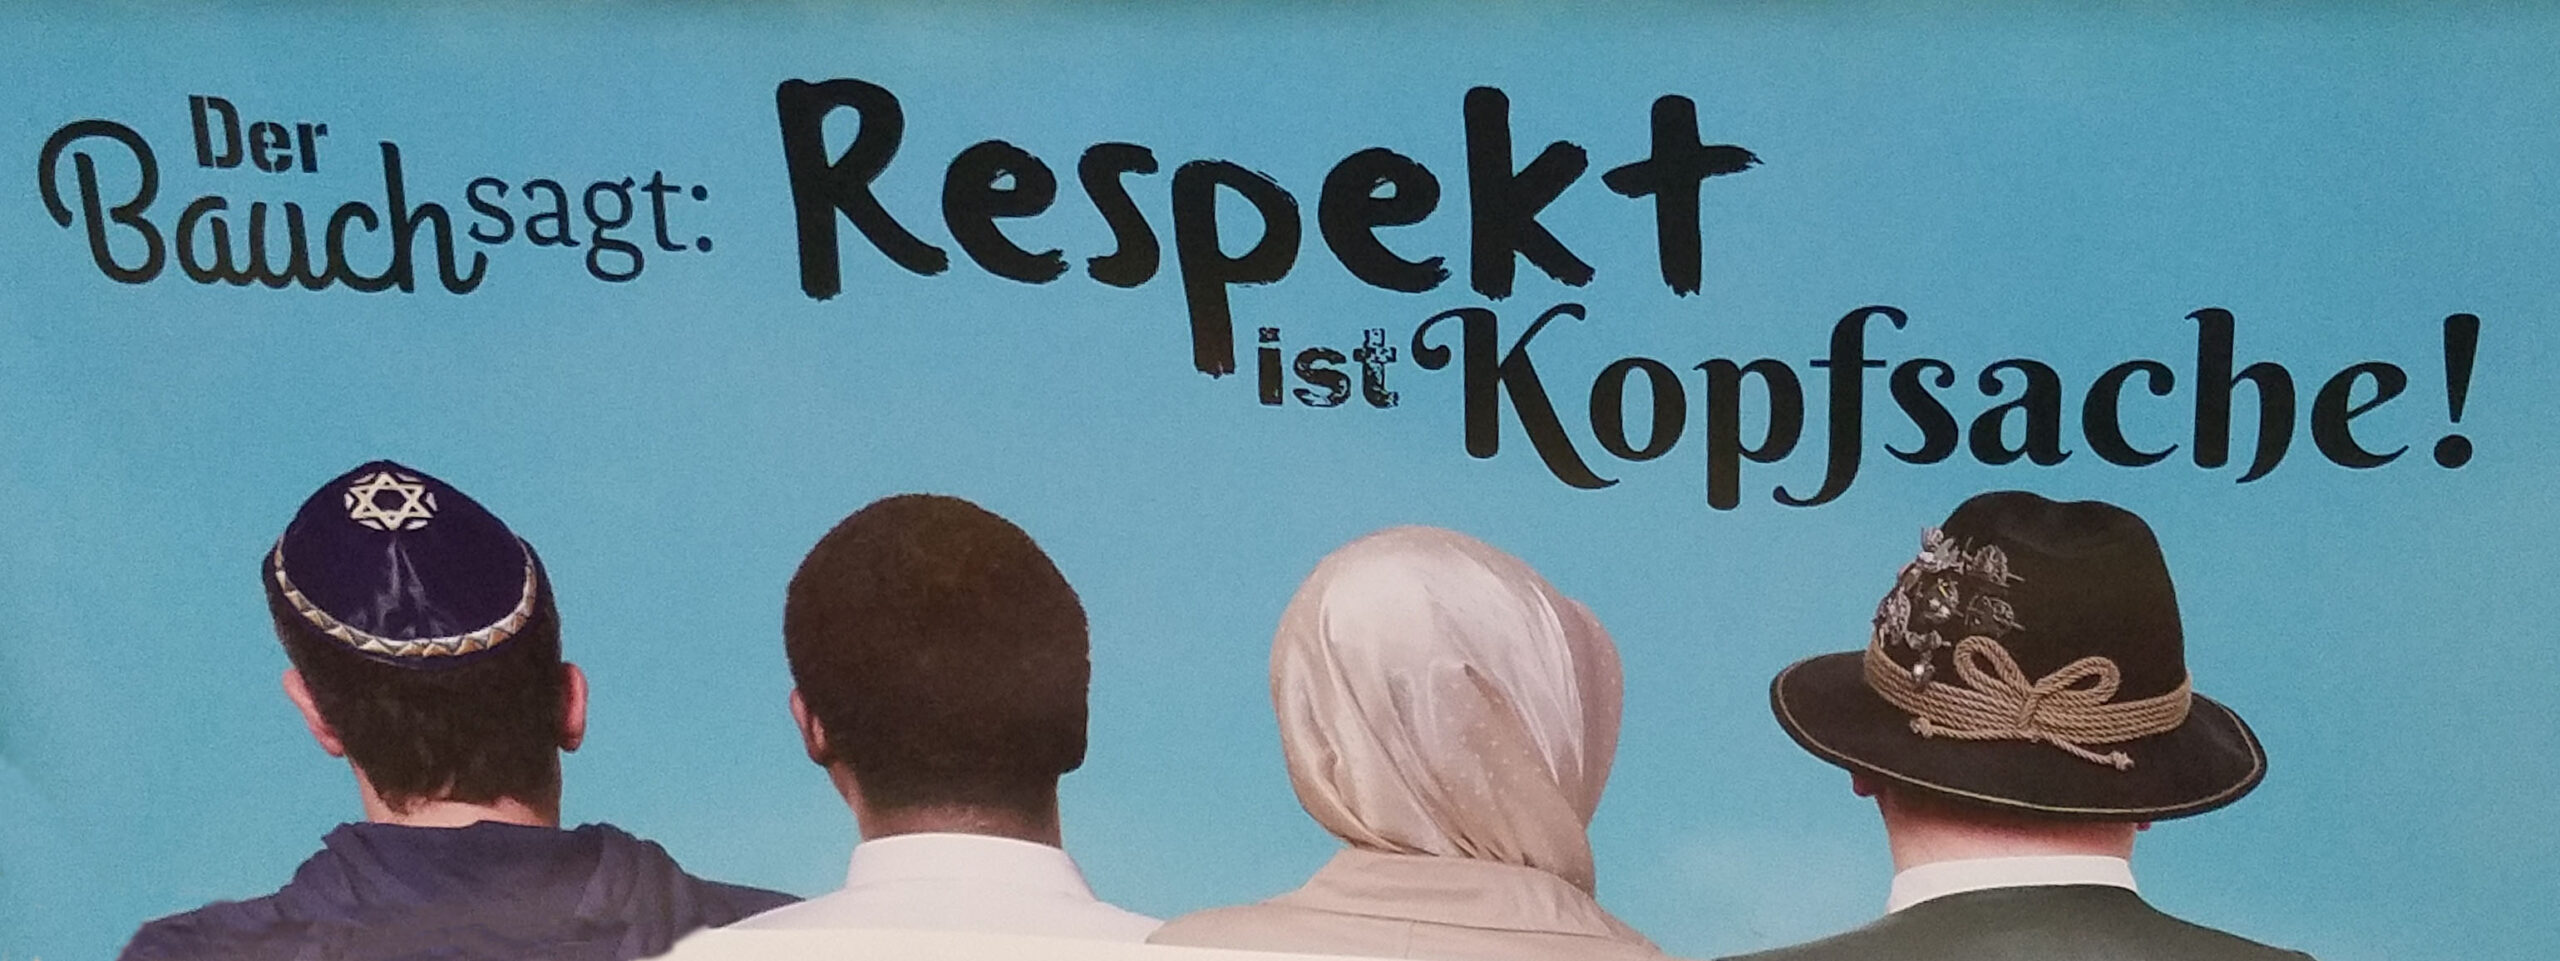 Subway ad reading "Der Bauch sagt, Respekt ist Kopfsache."